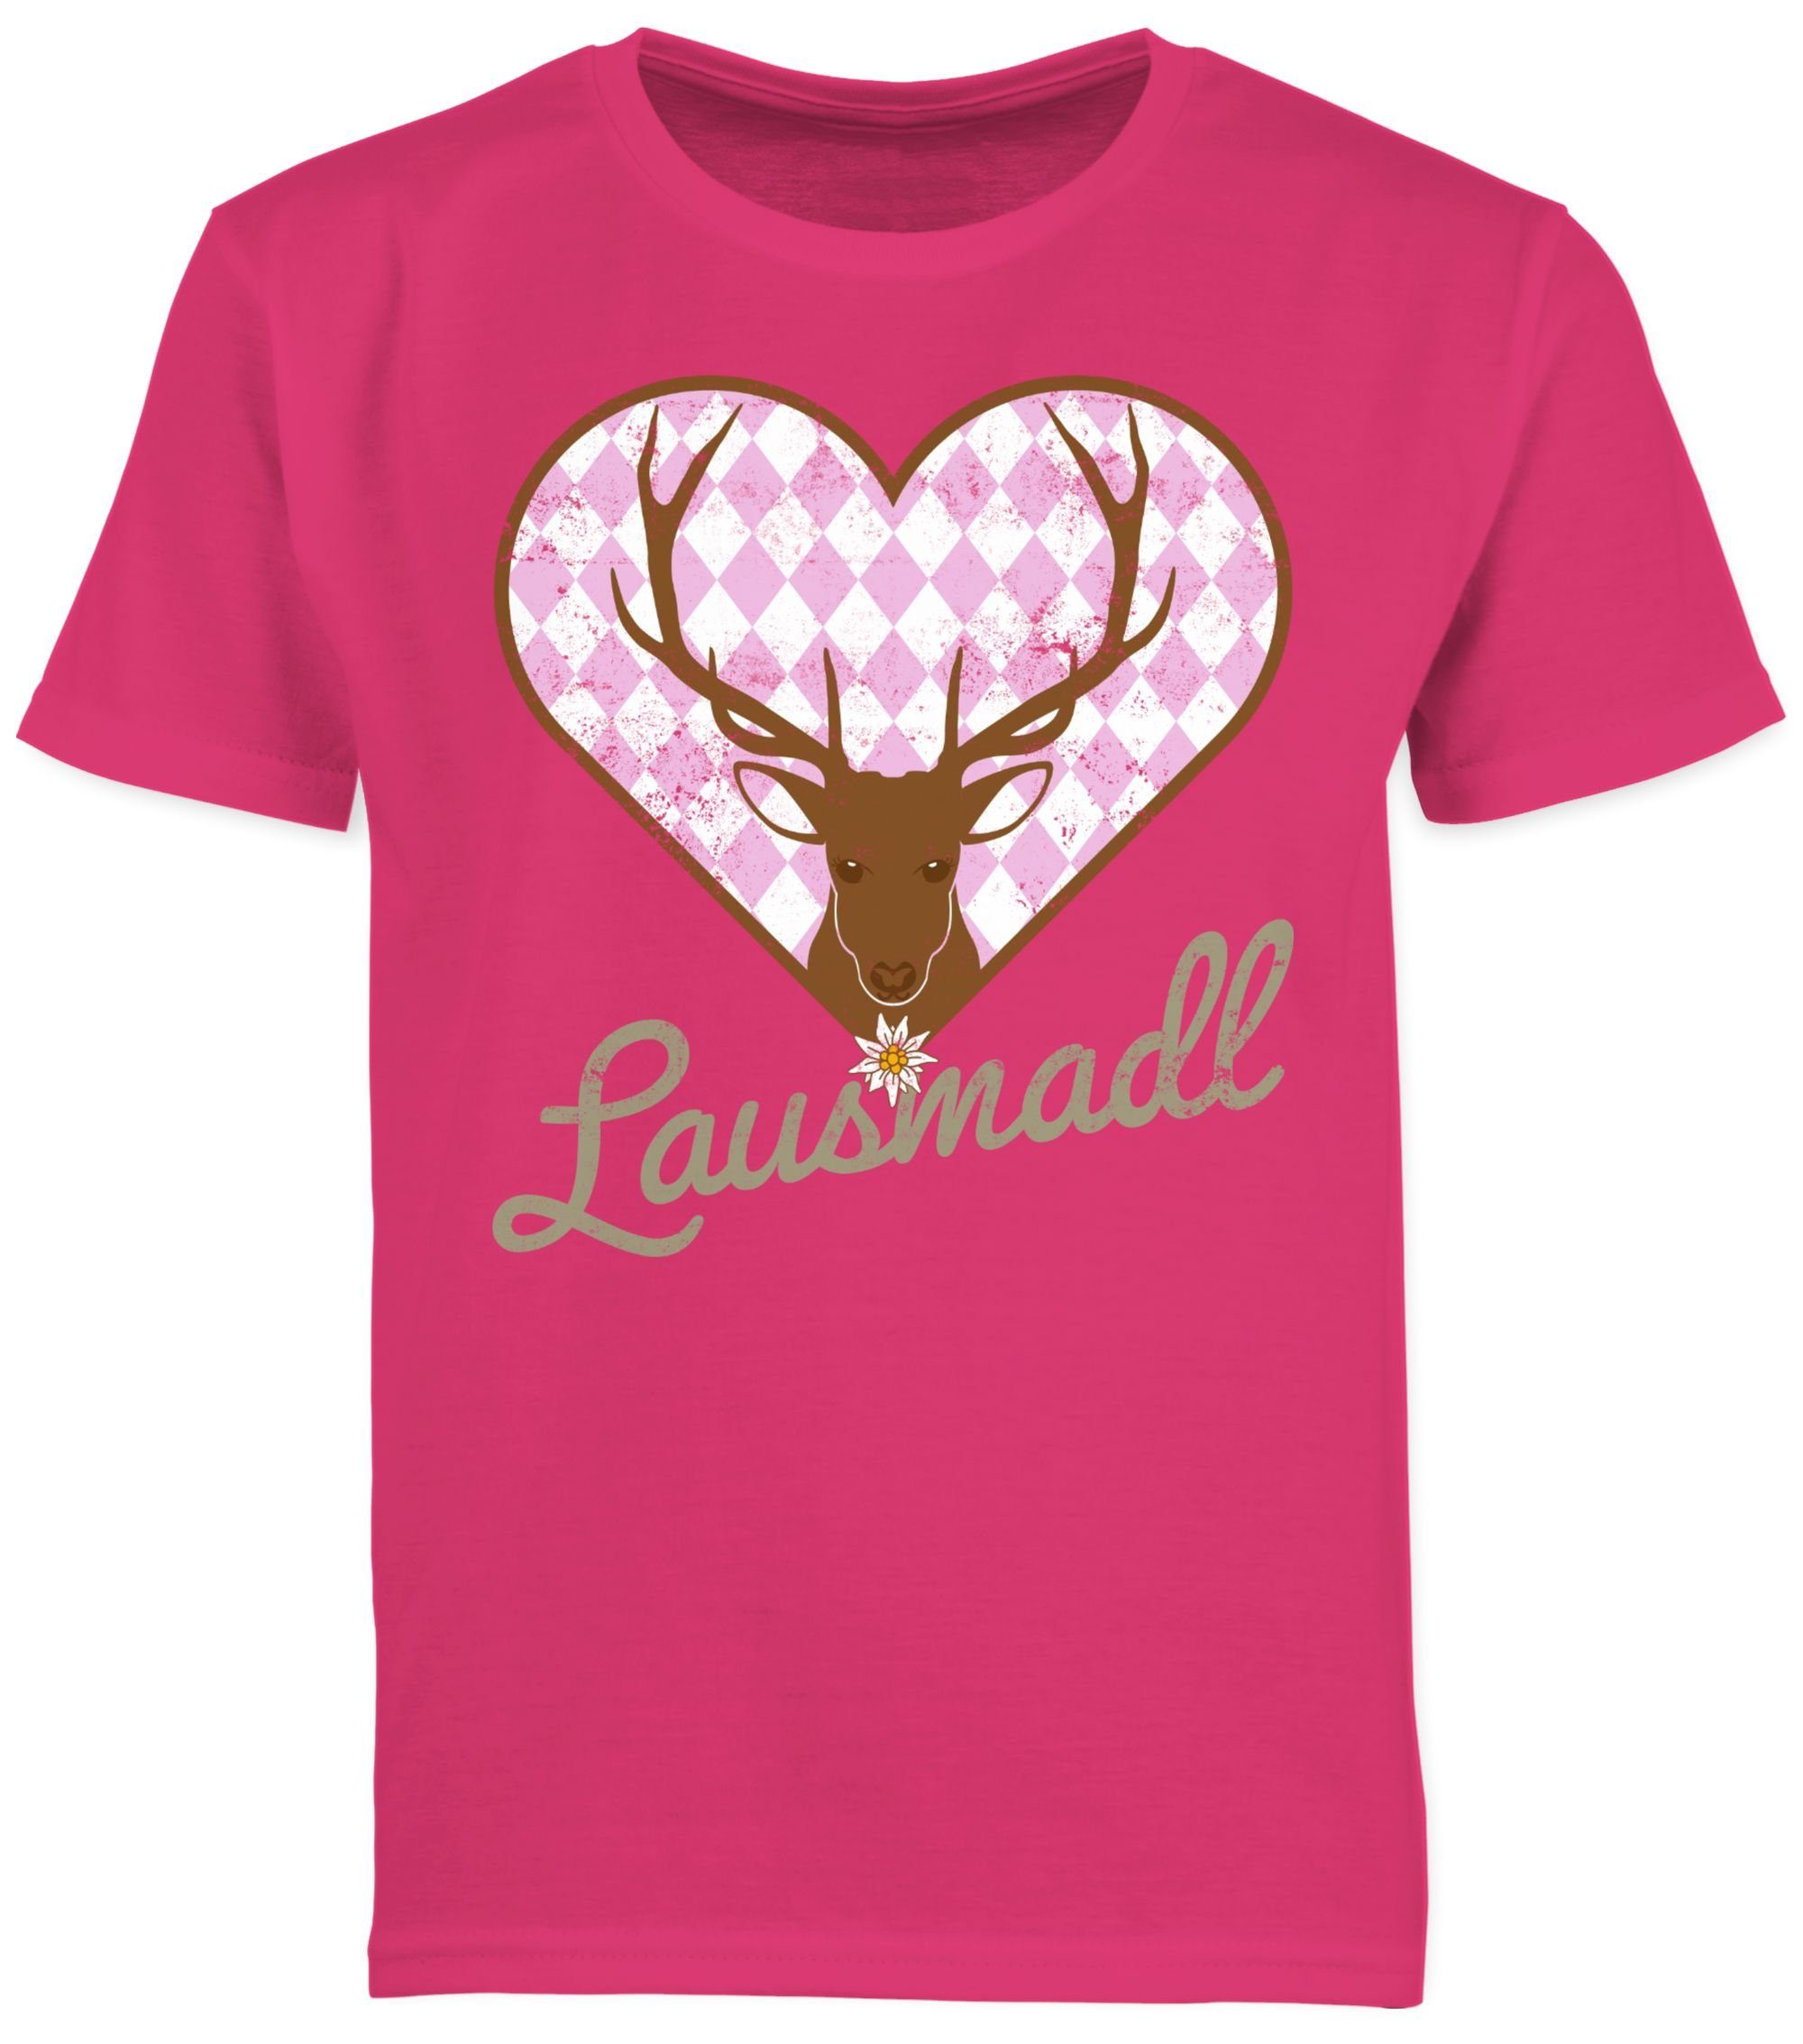 1 T-Shirt Lausmadl Oktoberfest Shirtracer Hirsch für Kinder Mode Outfit Fuchsia